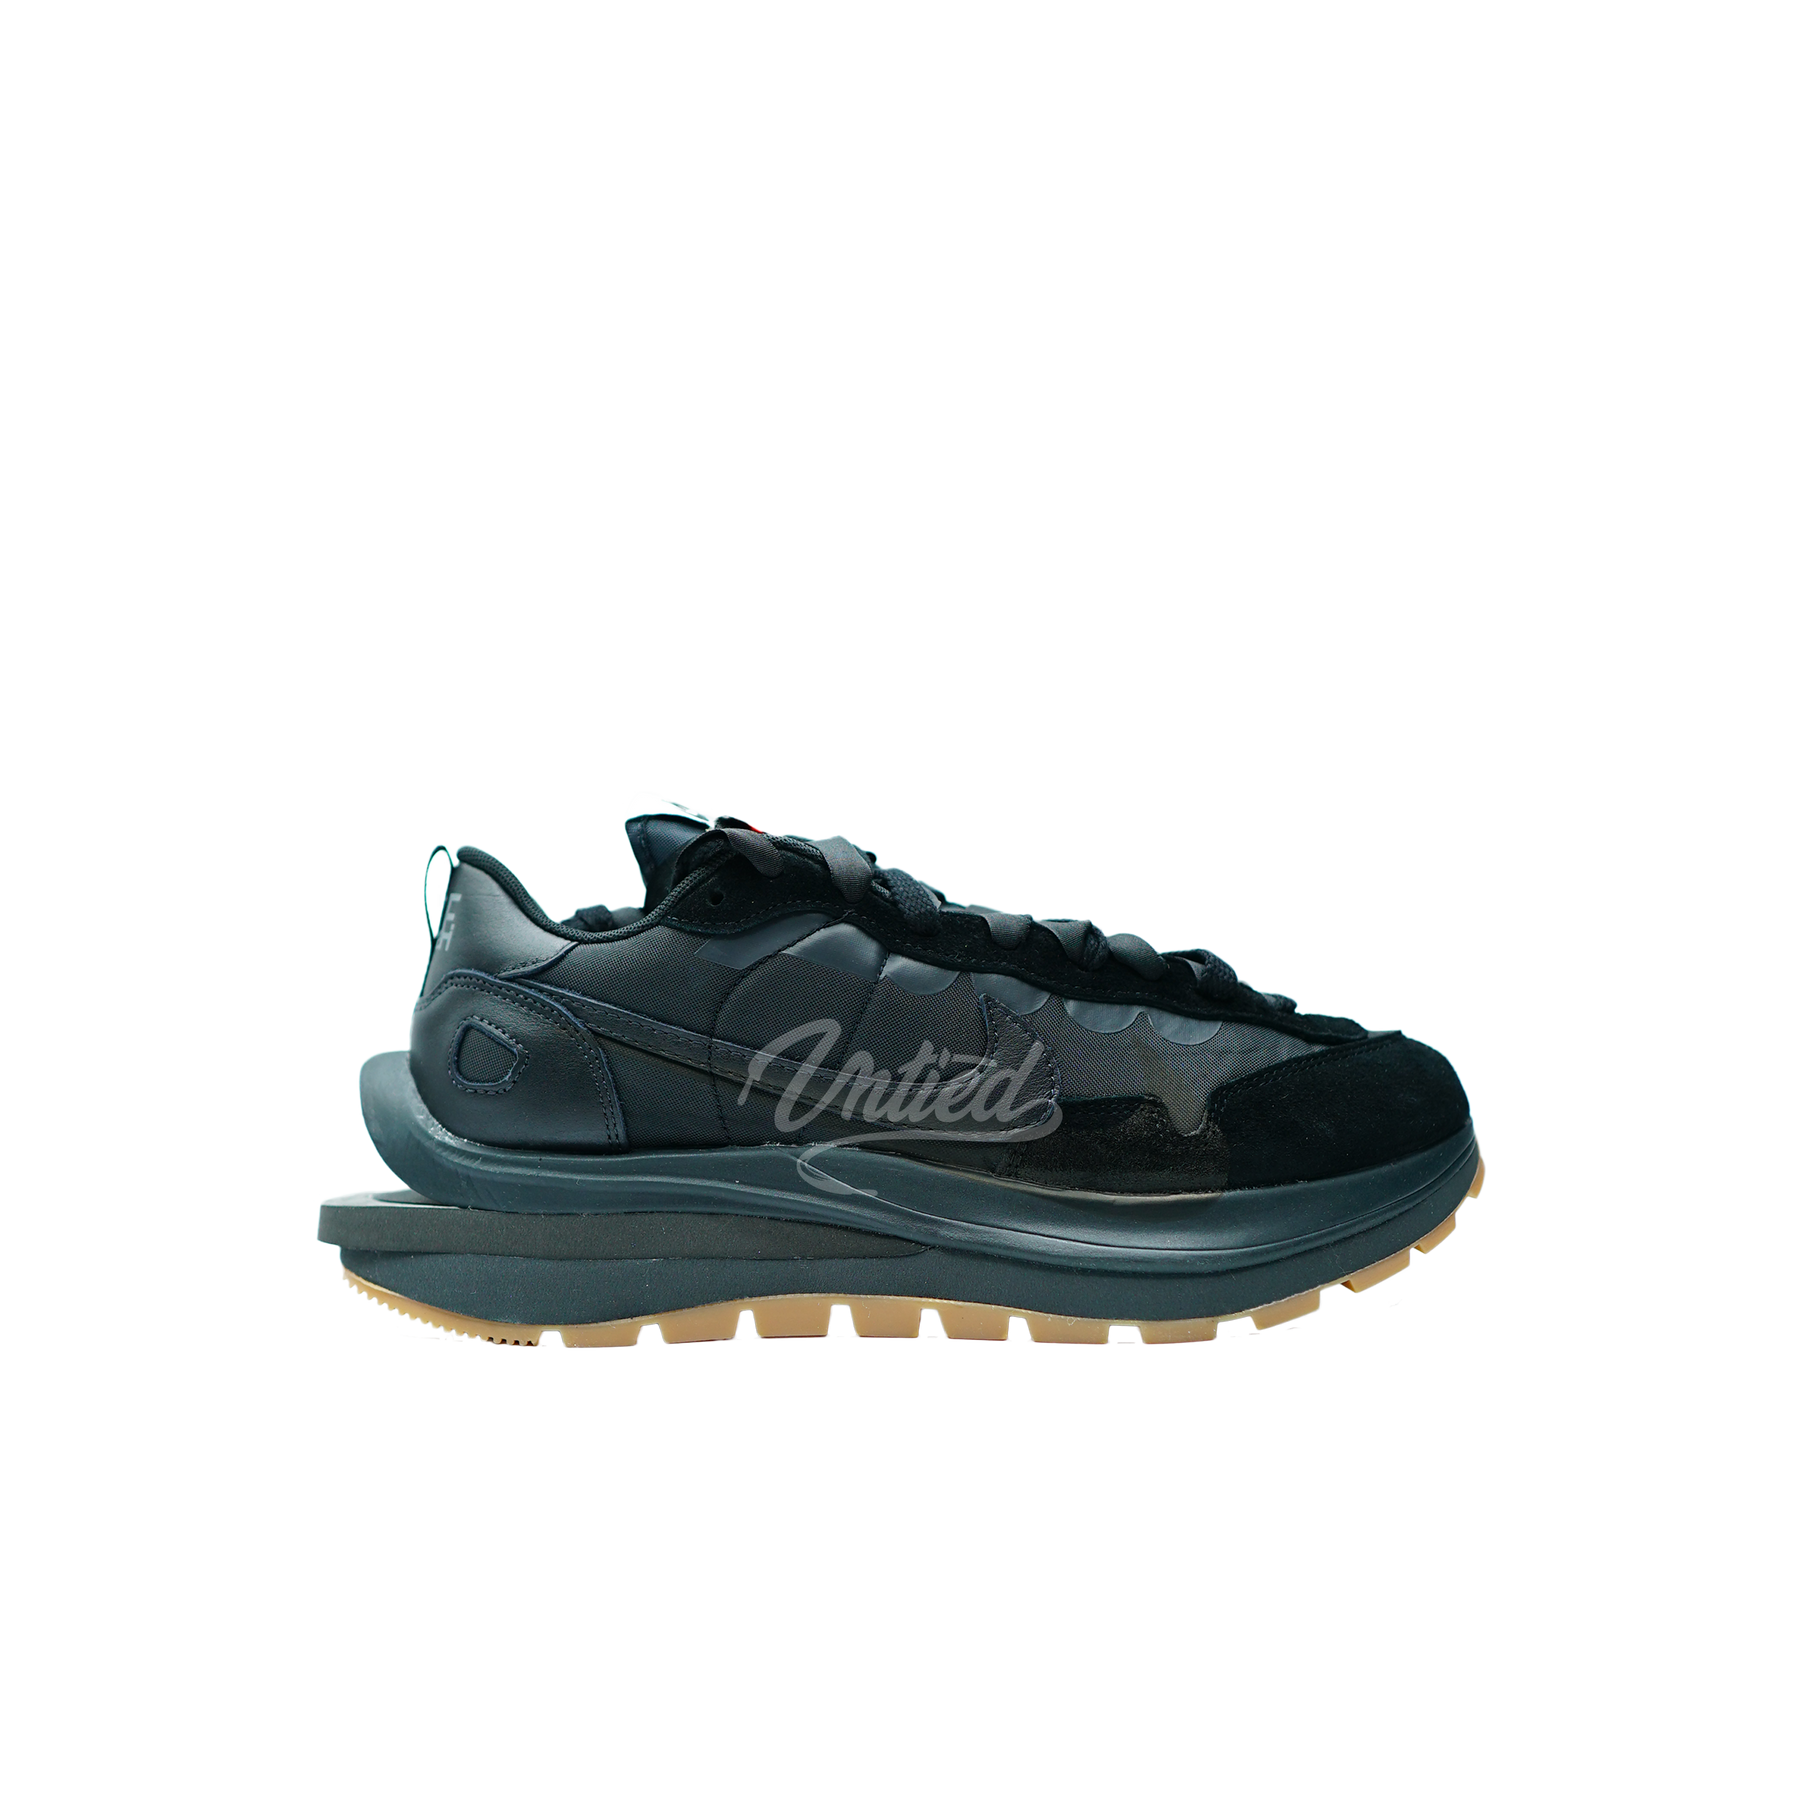 Nike Sacai Vaporwaffle "Black Gum"